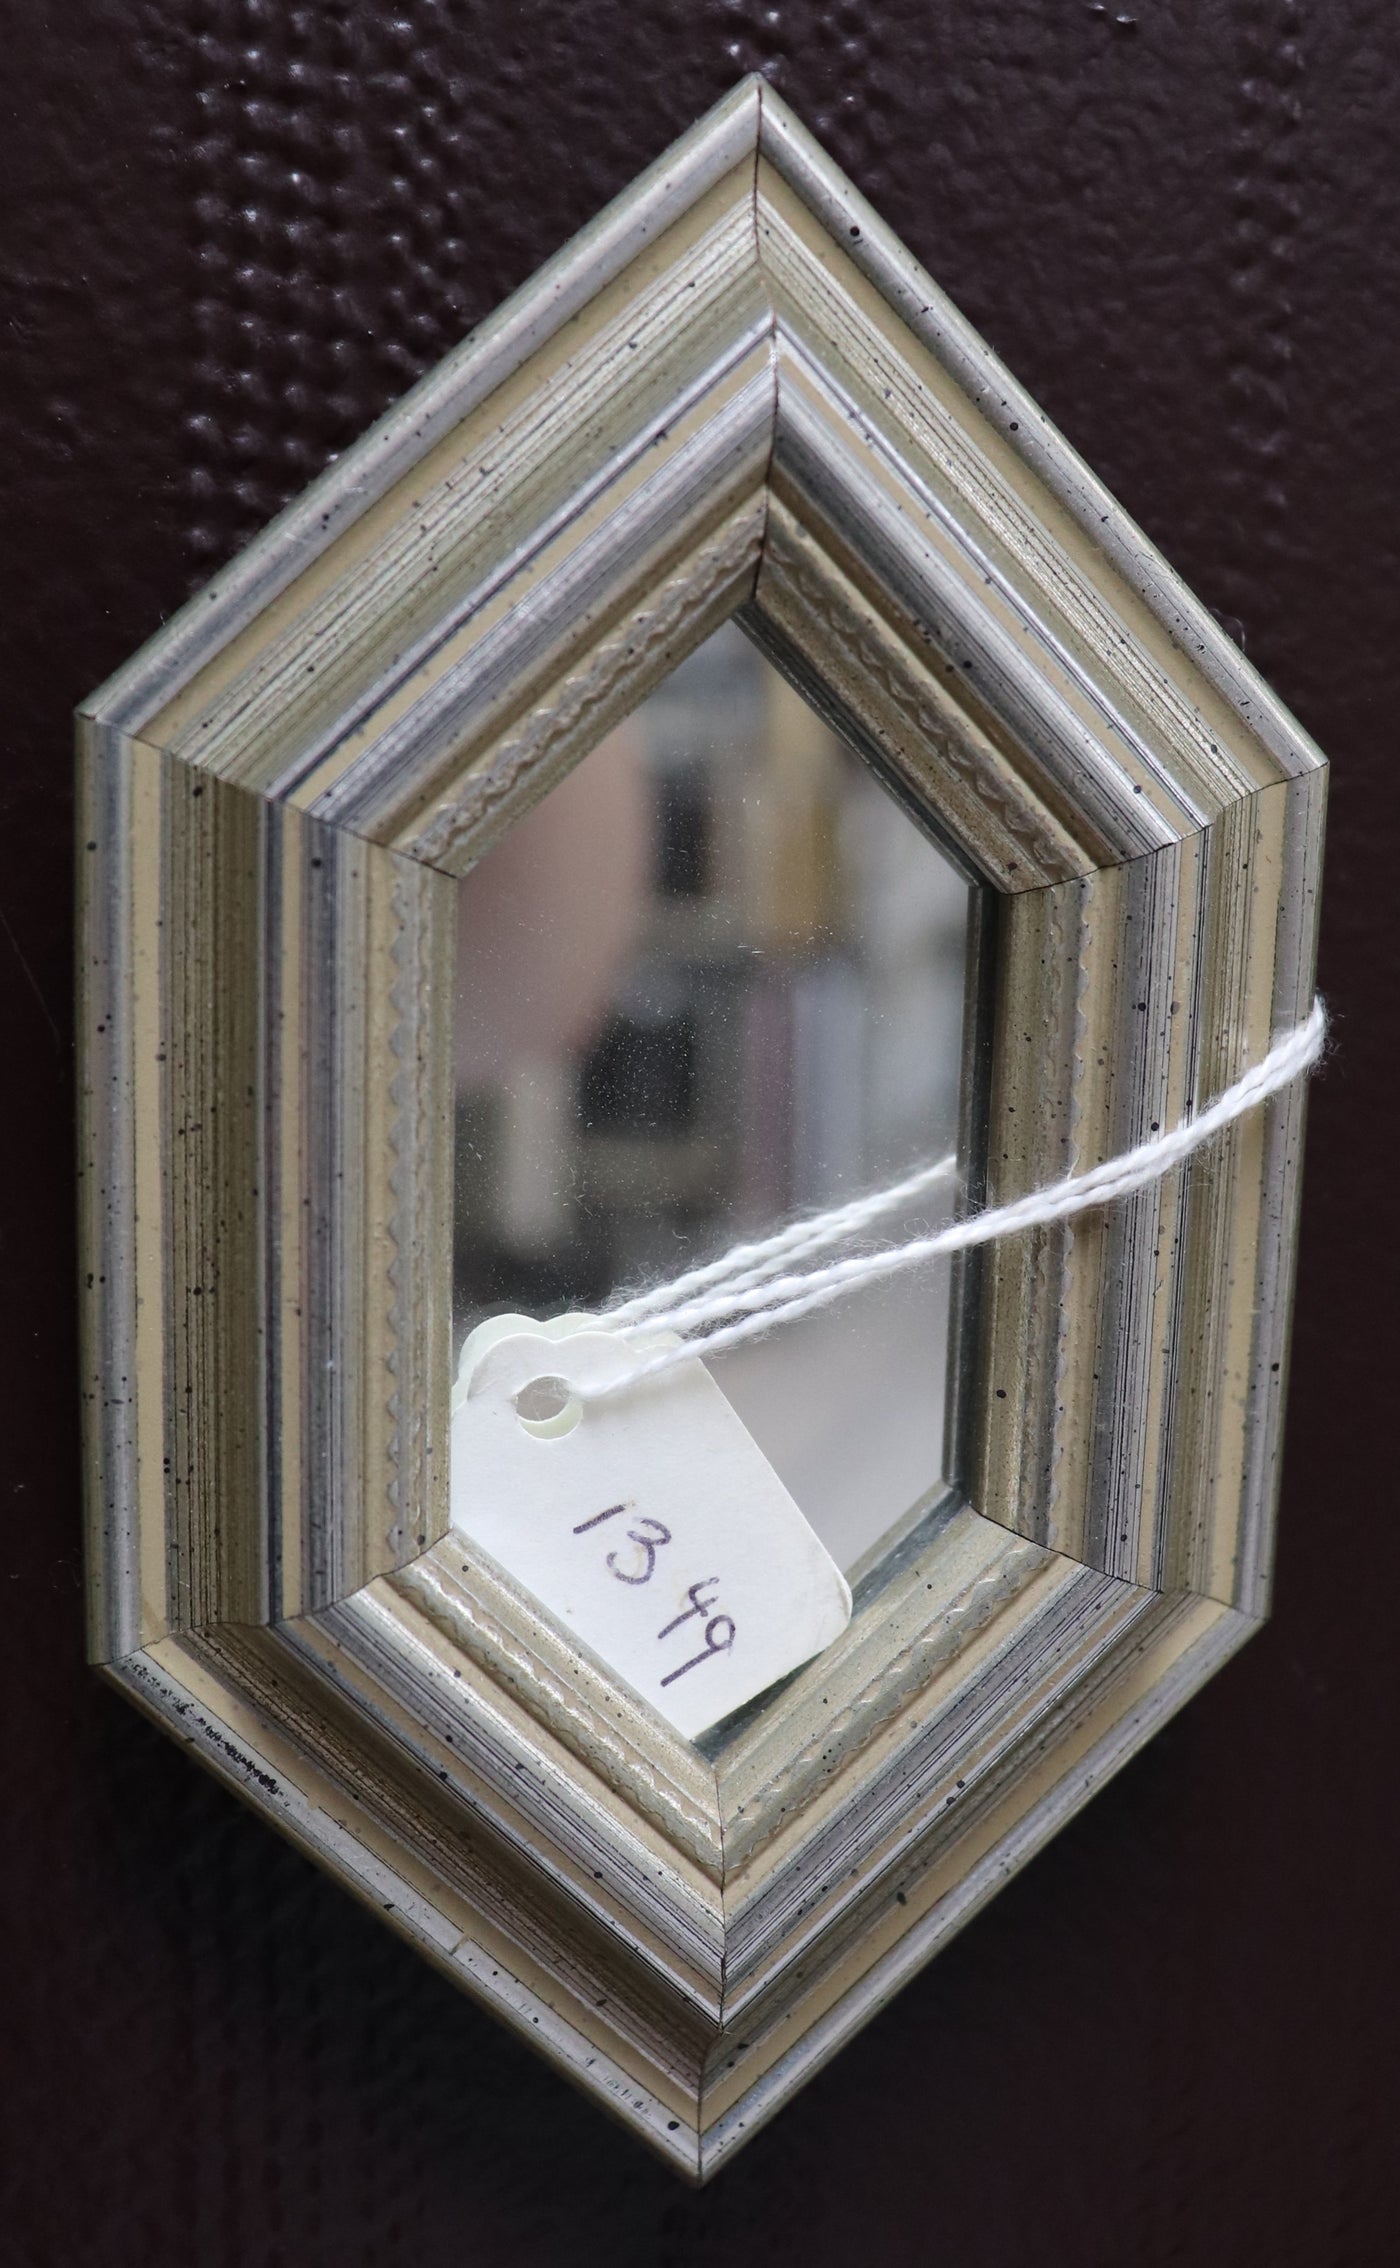 3" x 5" Hexagonal Silver Micro-Mirror